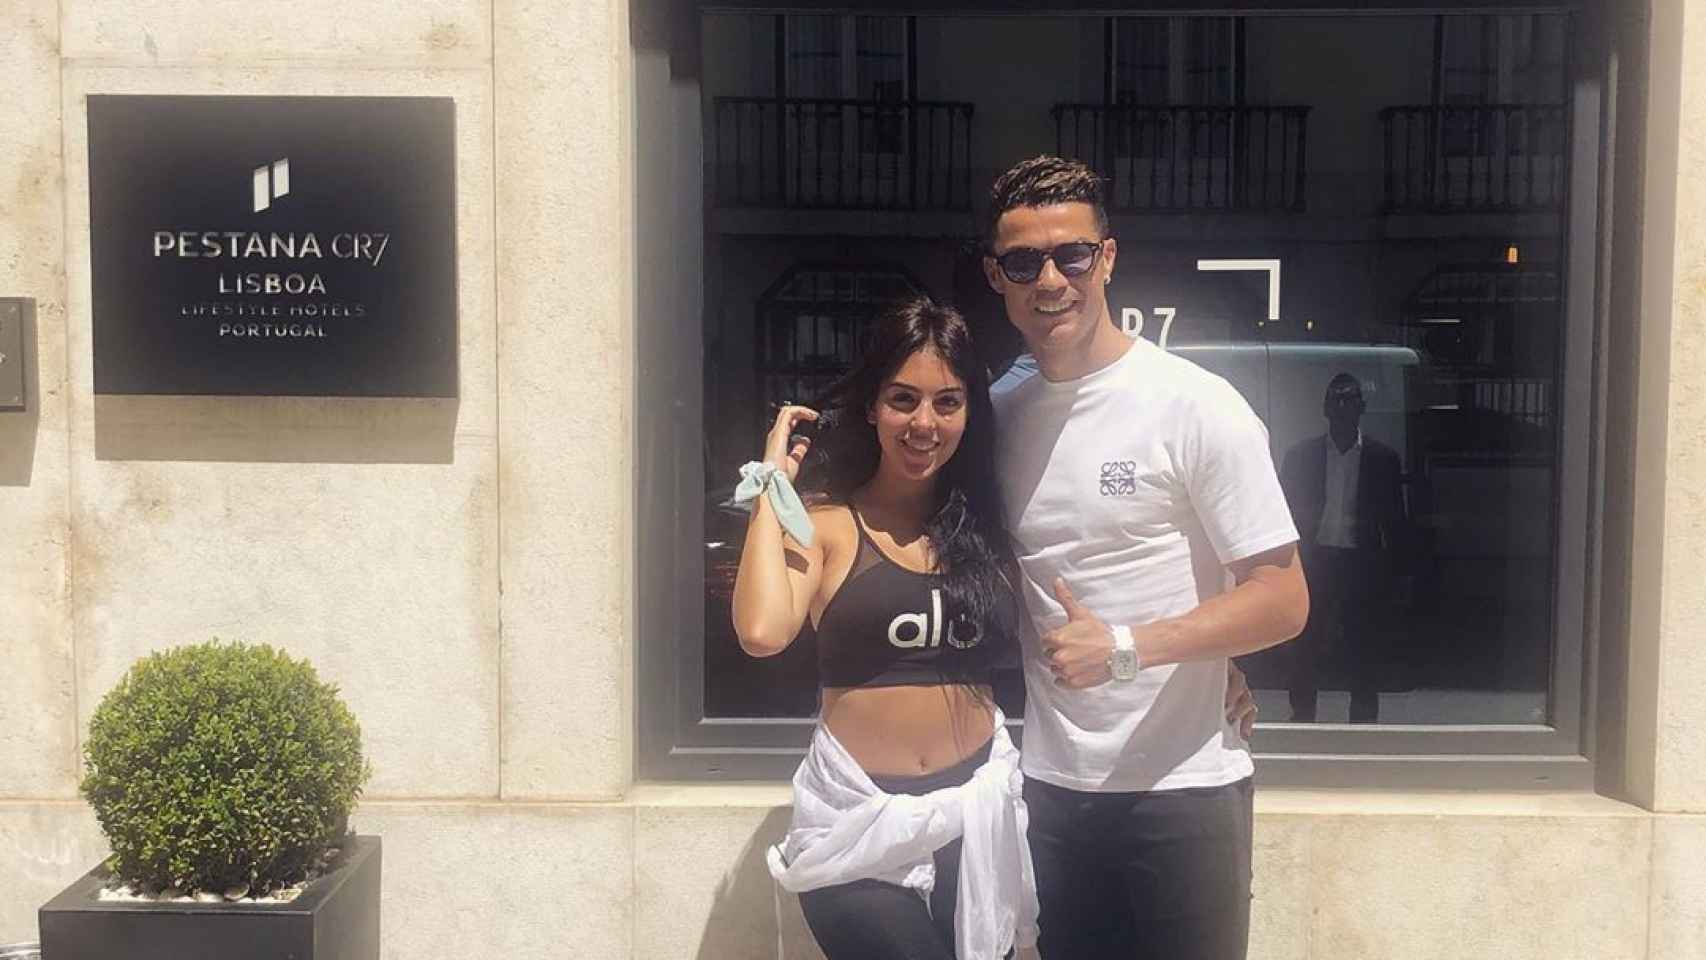 Cristiano Ronaldo y Georgina Rodríguez en el Hotel Pestana de Lisboa, propiedad del futbolista.